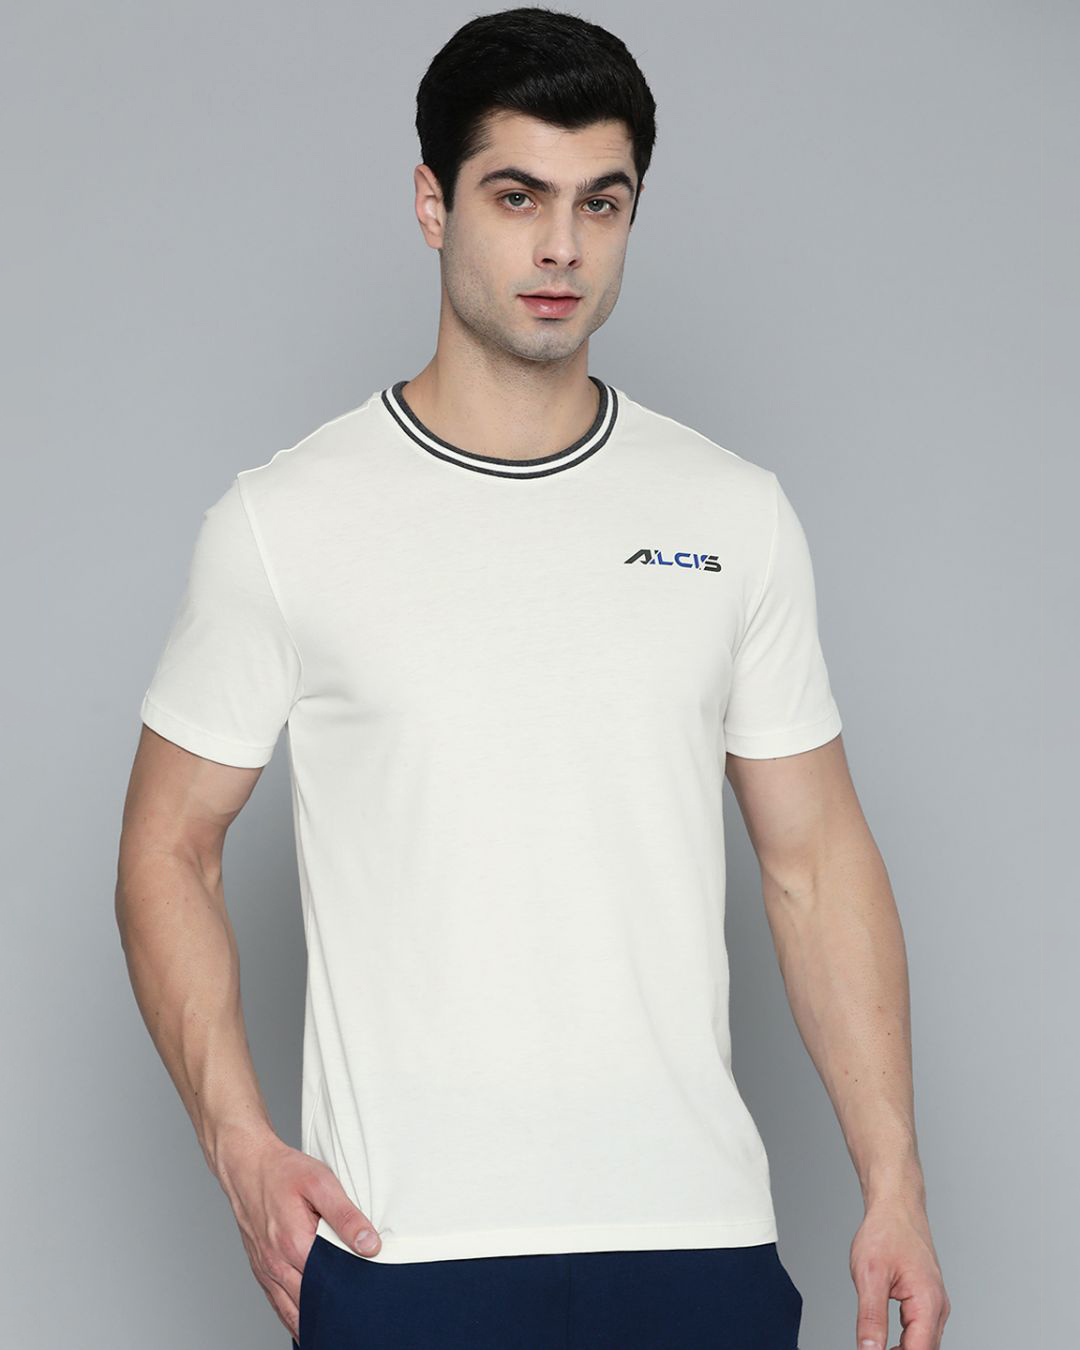 Buy Men's White Slim Fit Cotton T-shirt for Men White Online at Bewakoof